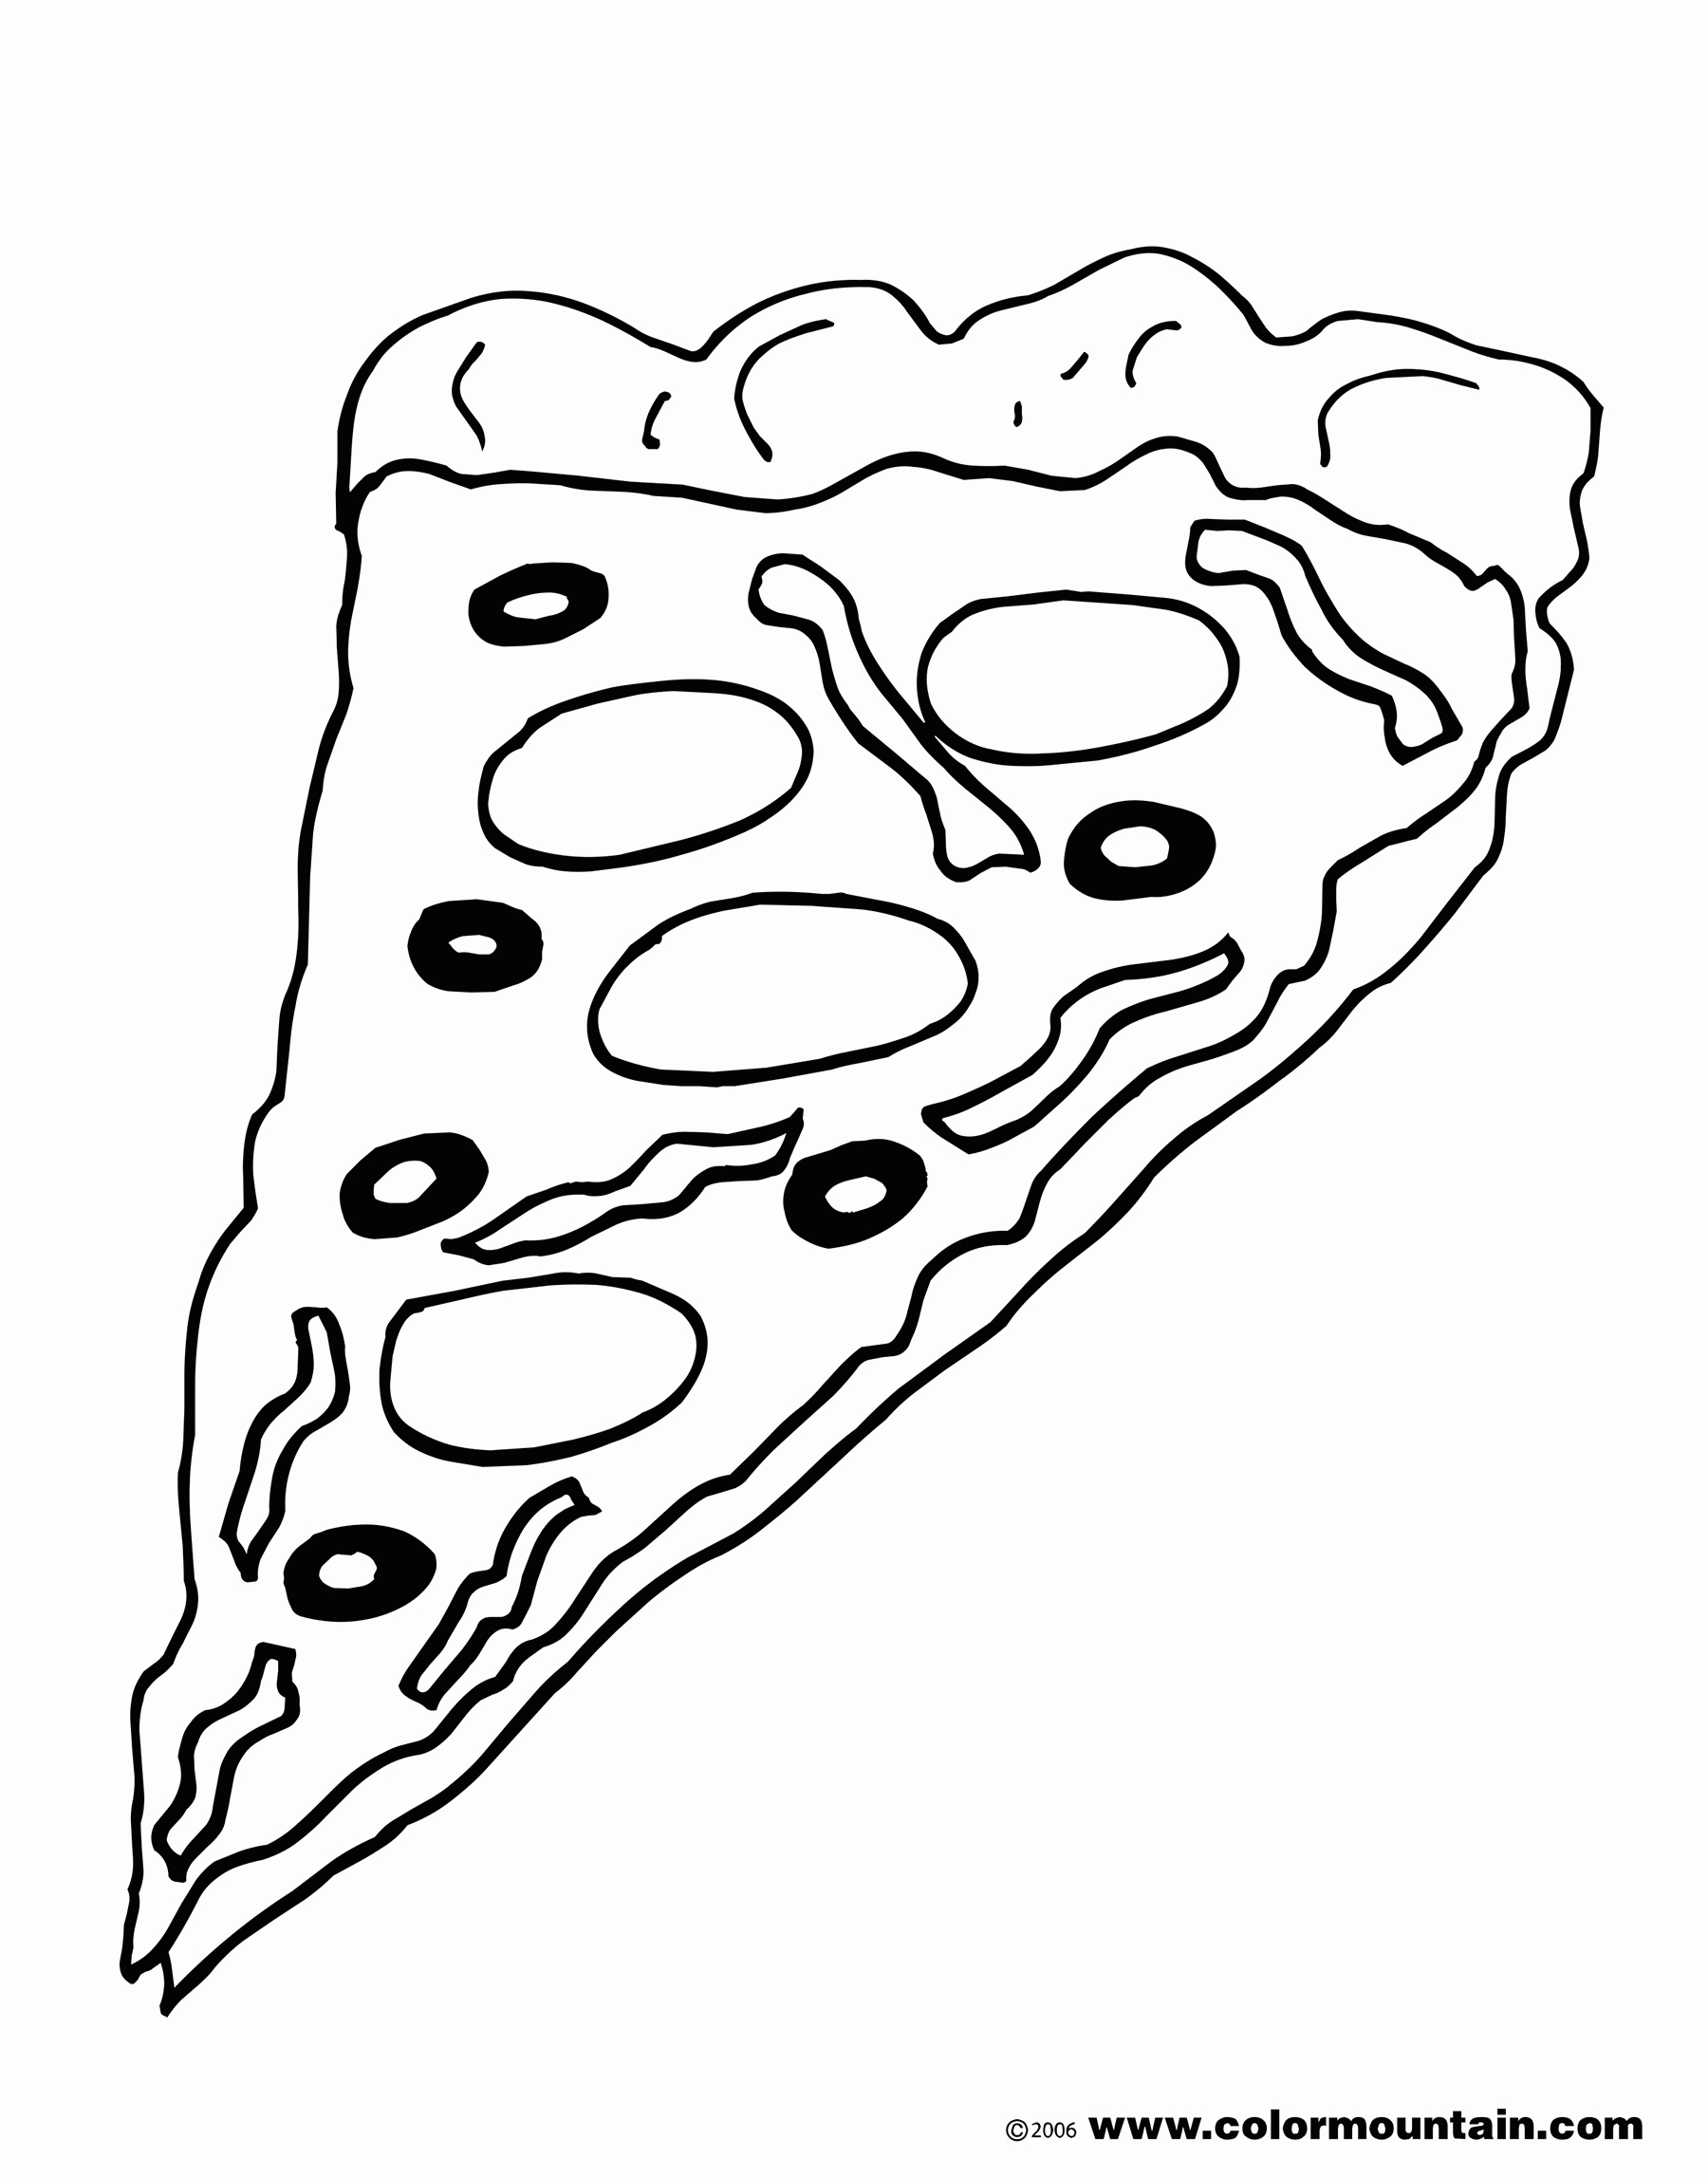 Раскраски Пицца для девочек и мальчиков. Раскрась вкусную пиццу. Пицца для детей. Раскрась пиццу. Пицца Маргарита. Раскраски Пицца для девочек и мальчиков. Раскрась вкусную пиццу.                                                  